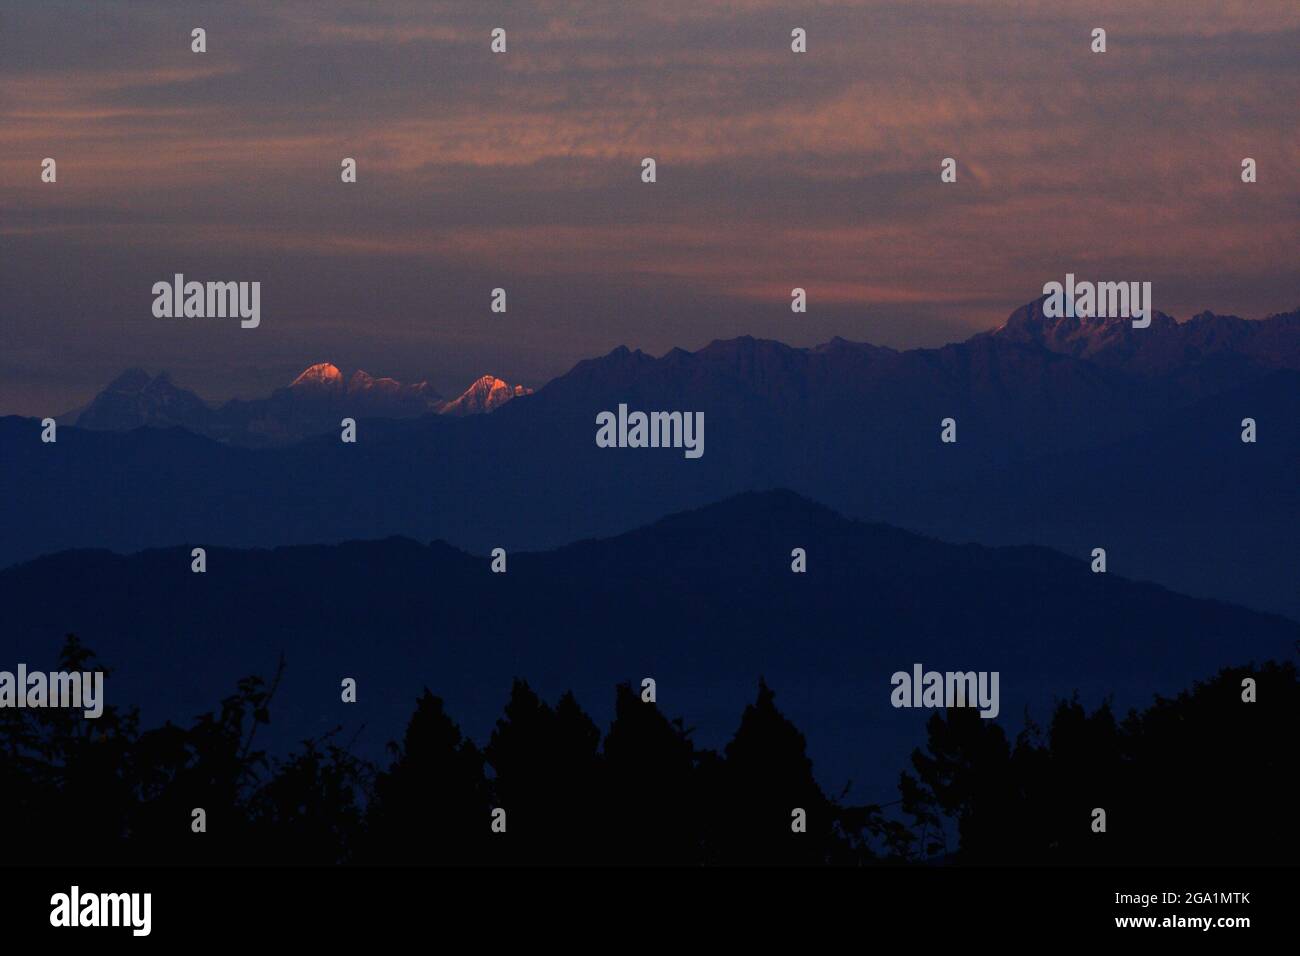 Kanchenjunga ranges, India. Stock Photo